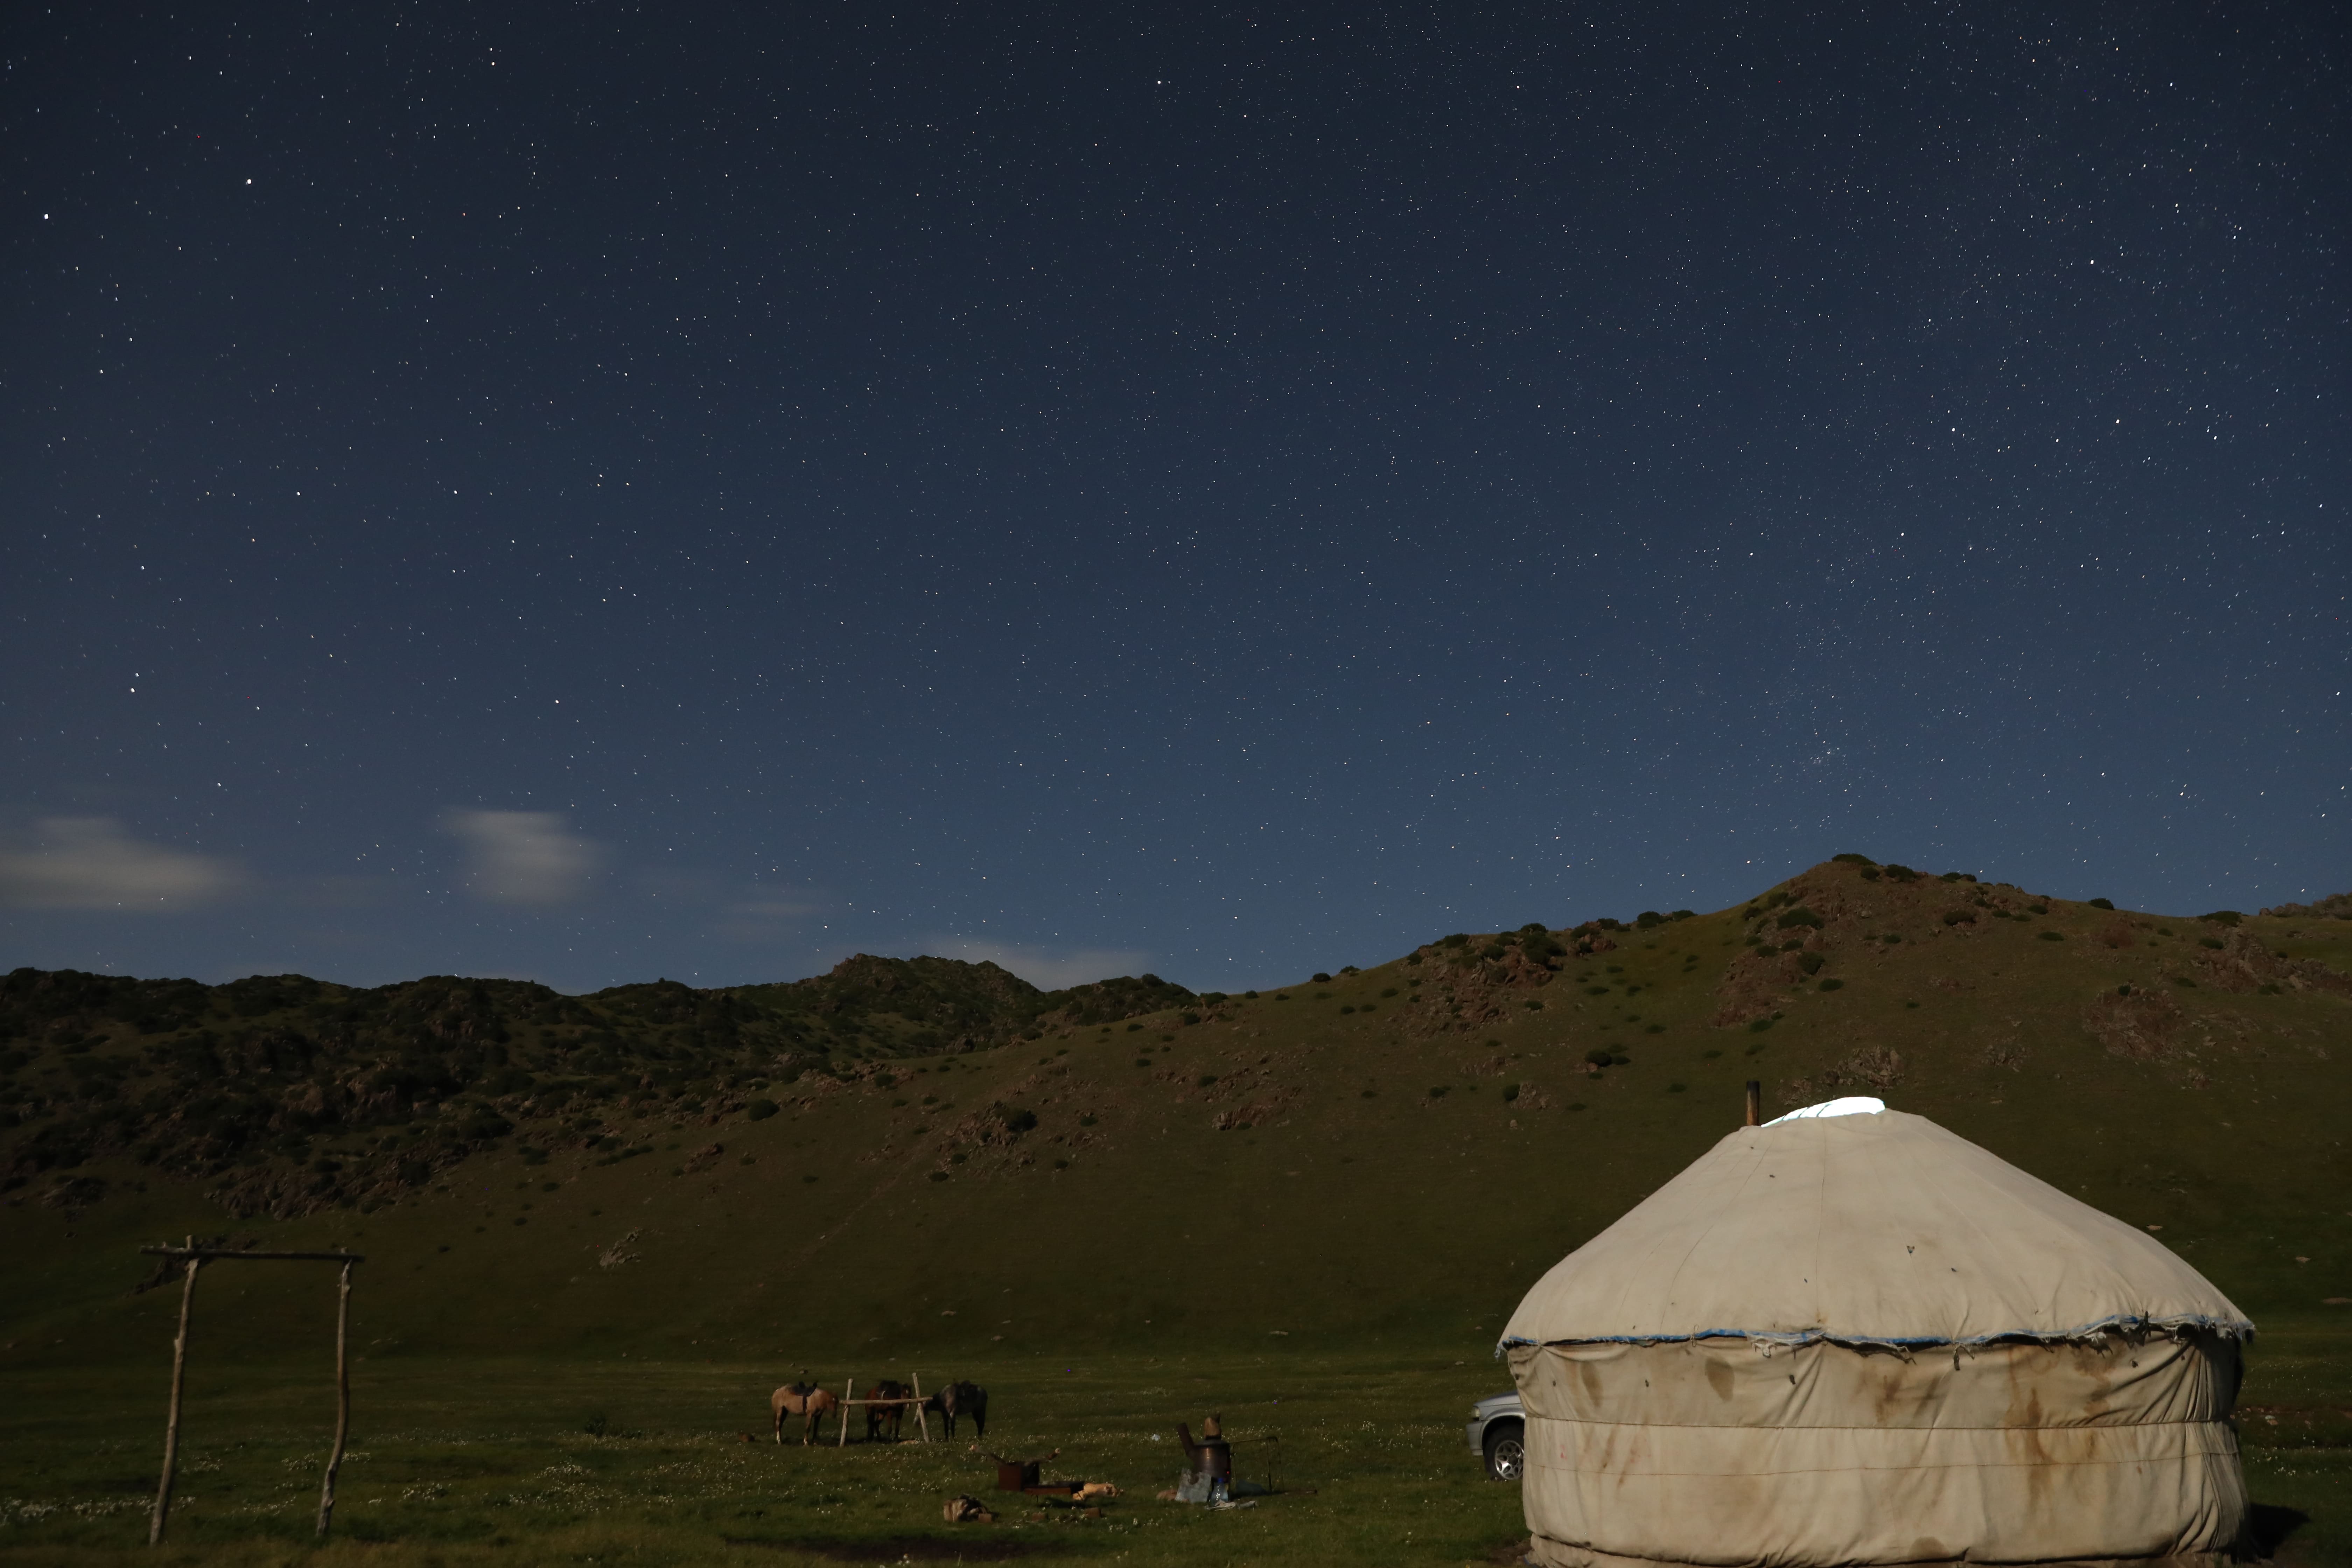 Shanyrak under the starry sky. Mukhtor Kholdorbekov